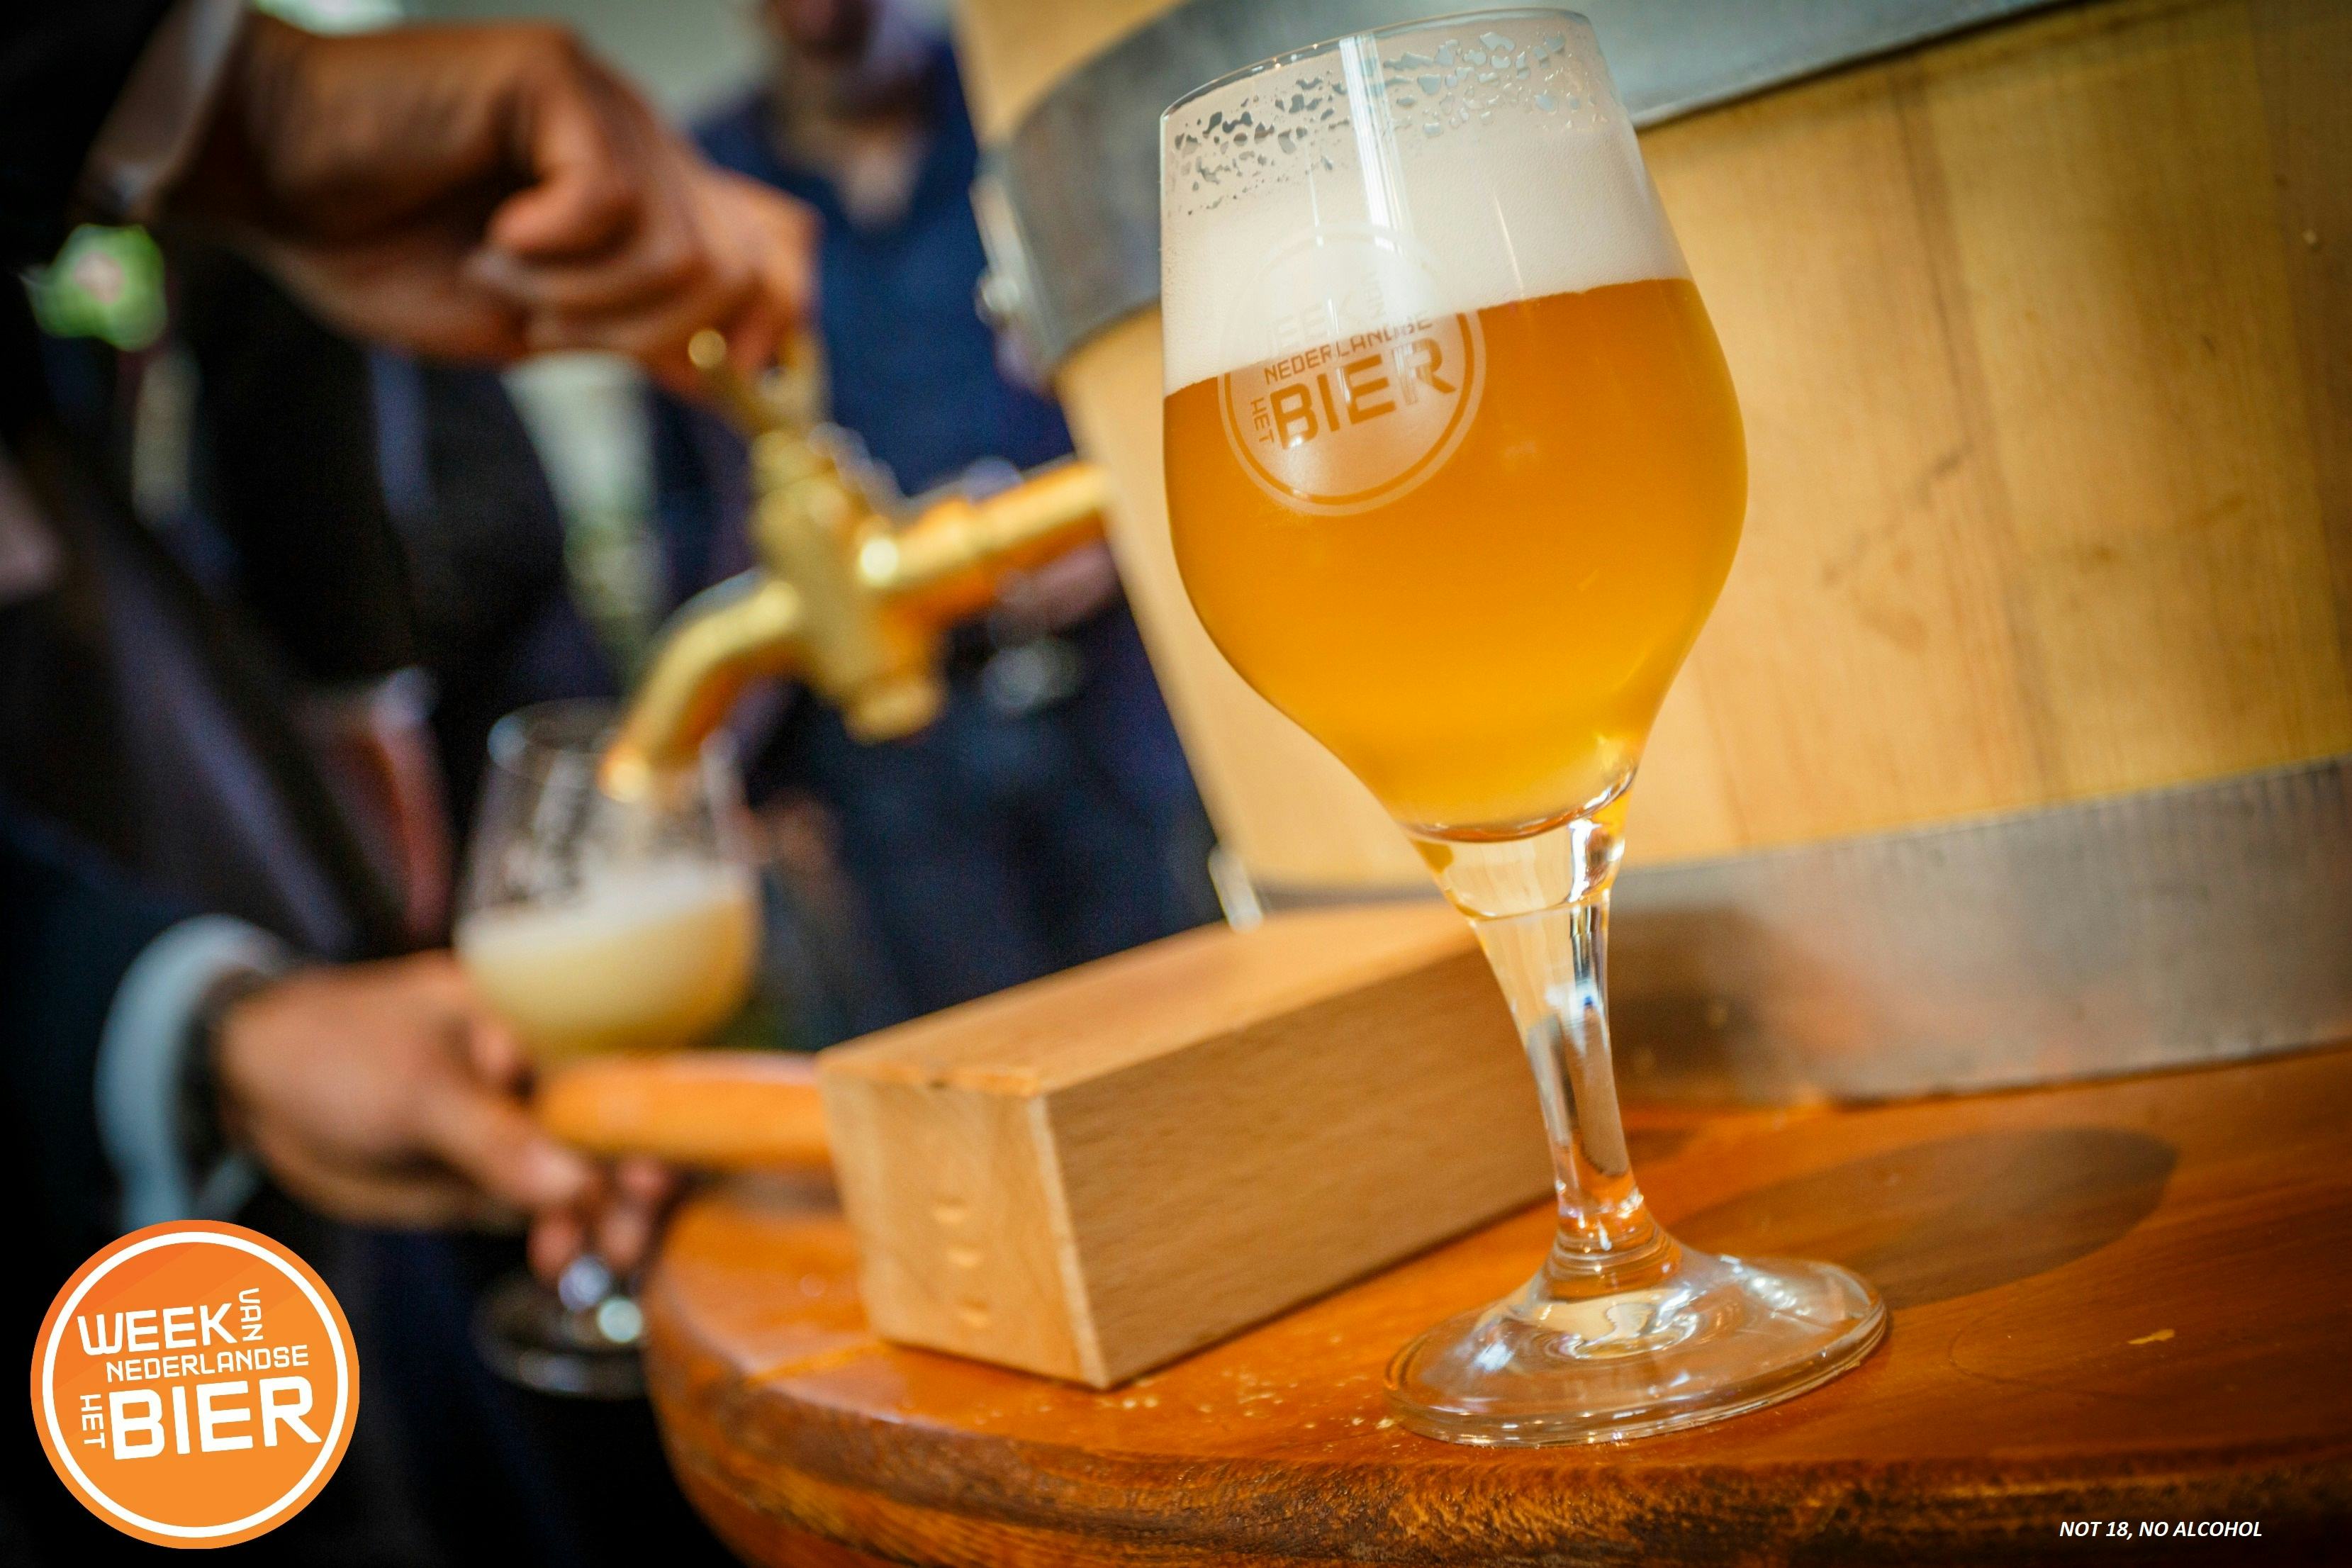 Achtste Week van het Nederlandse Bier in aantocht